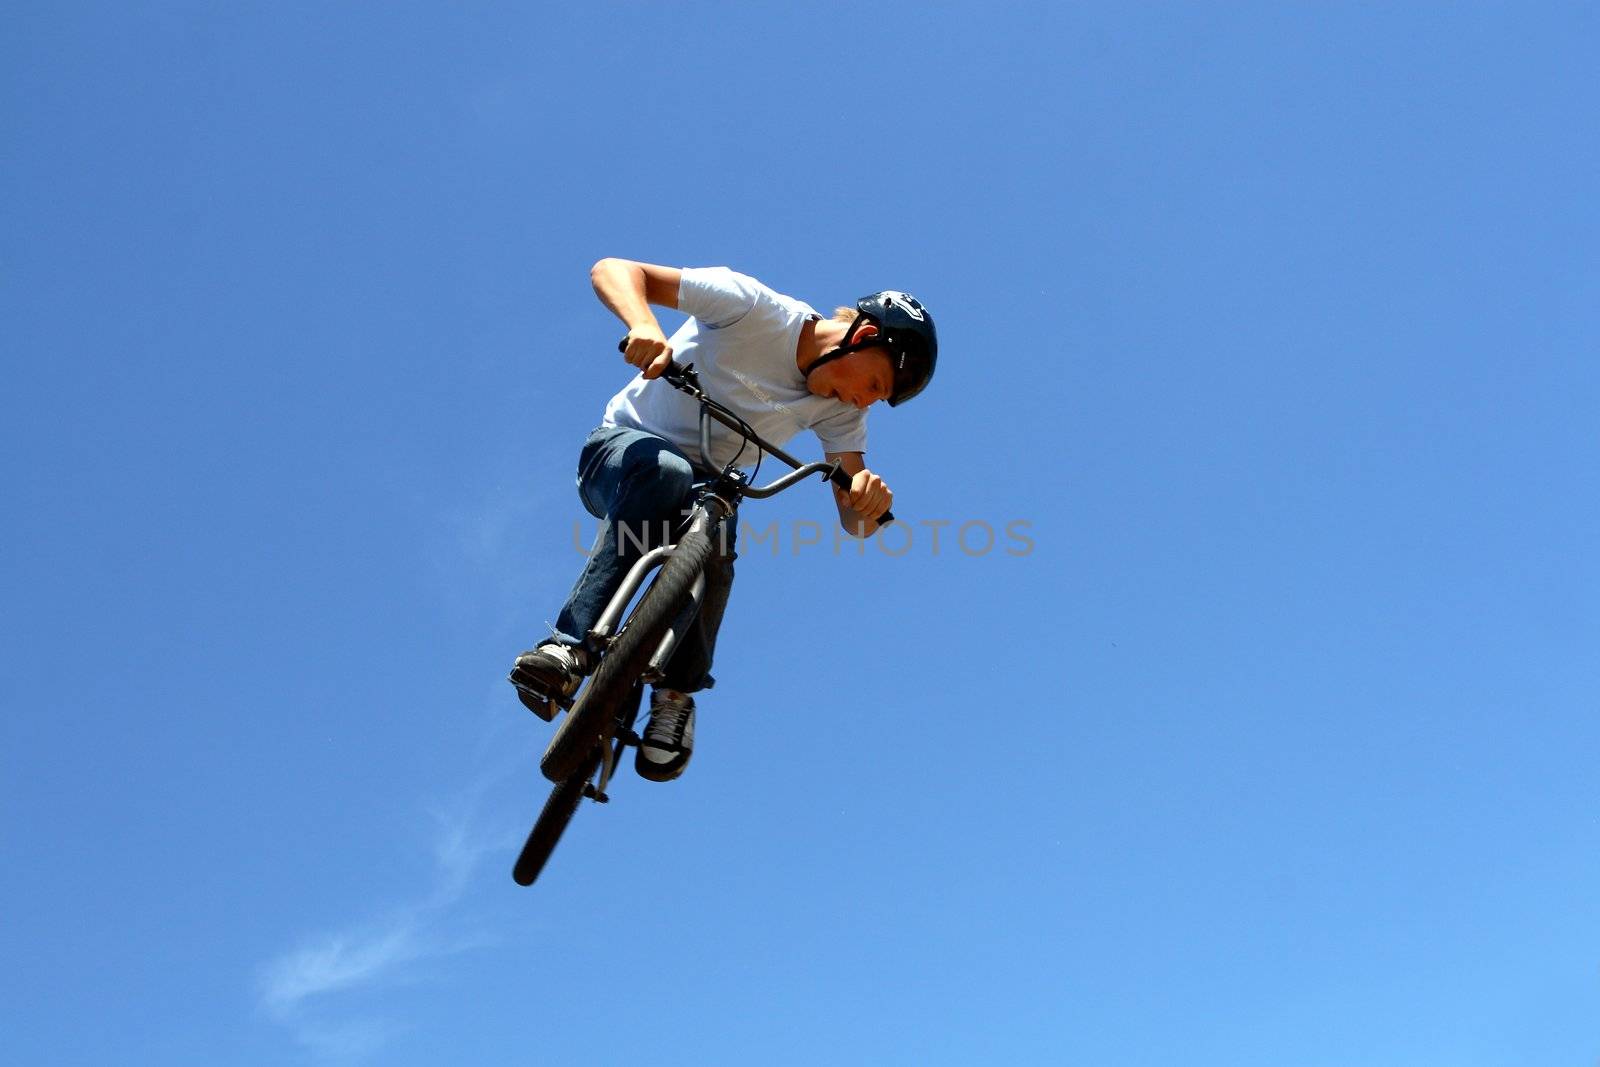 biker acrobat during jumping